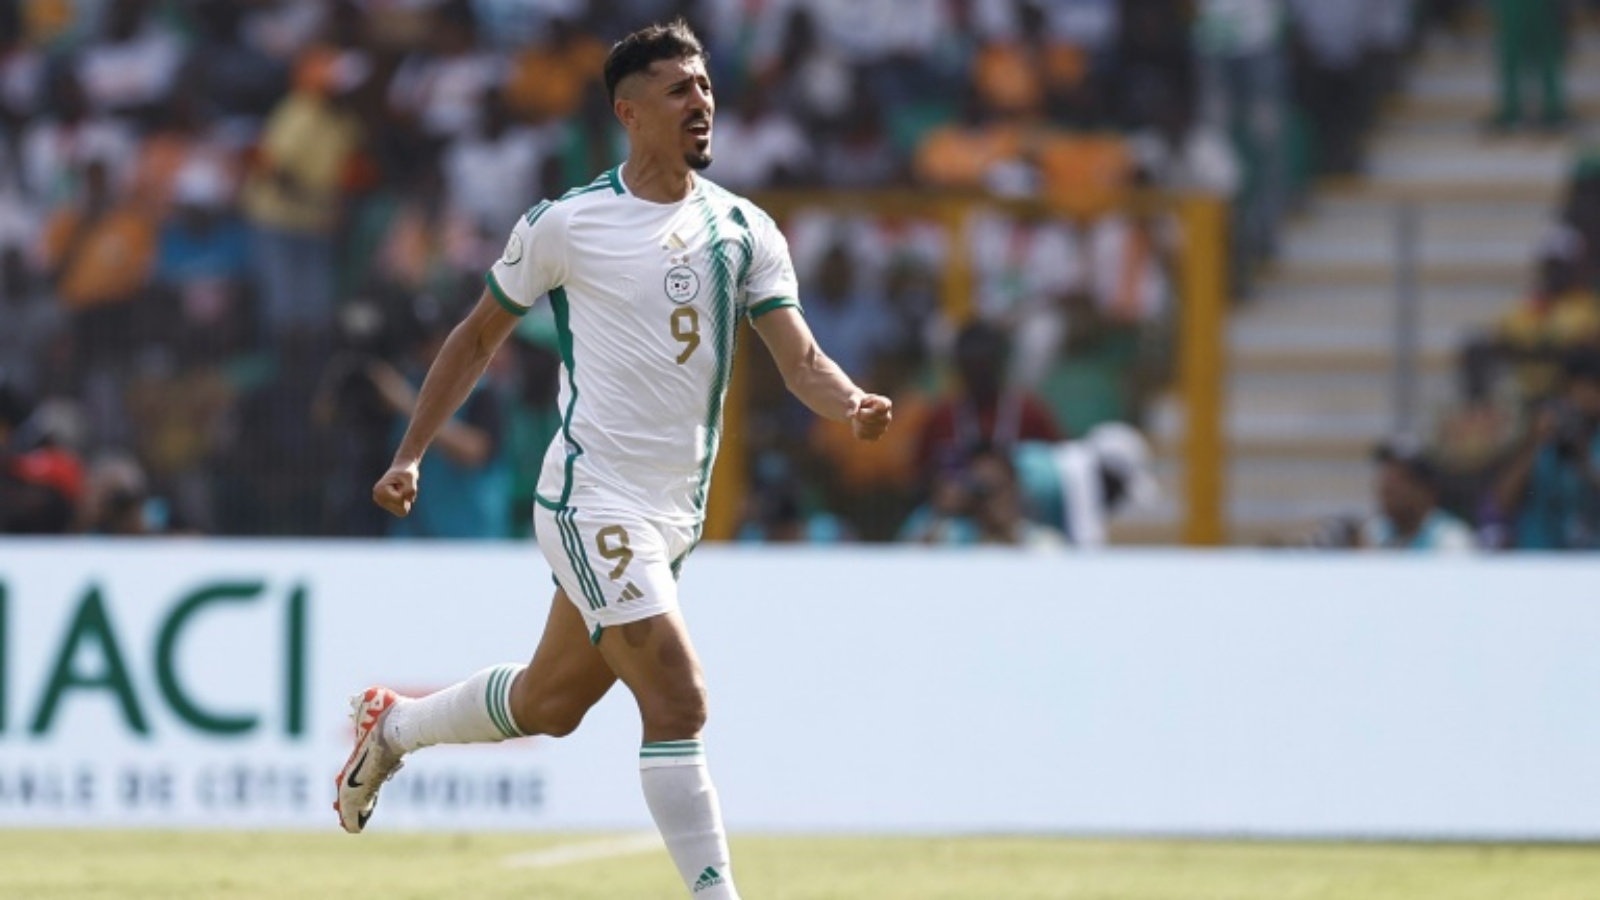 سجل بونجاح أهداف الجزائر الثلاثة في كأس أفريقيا الحالية